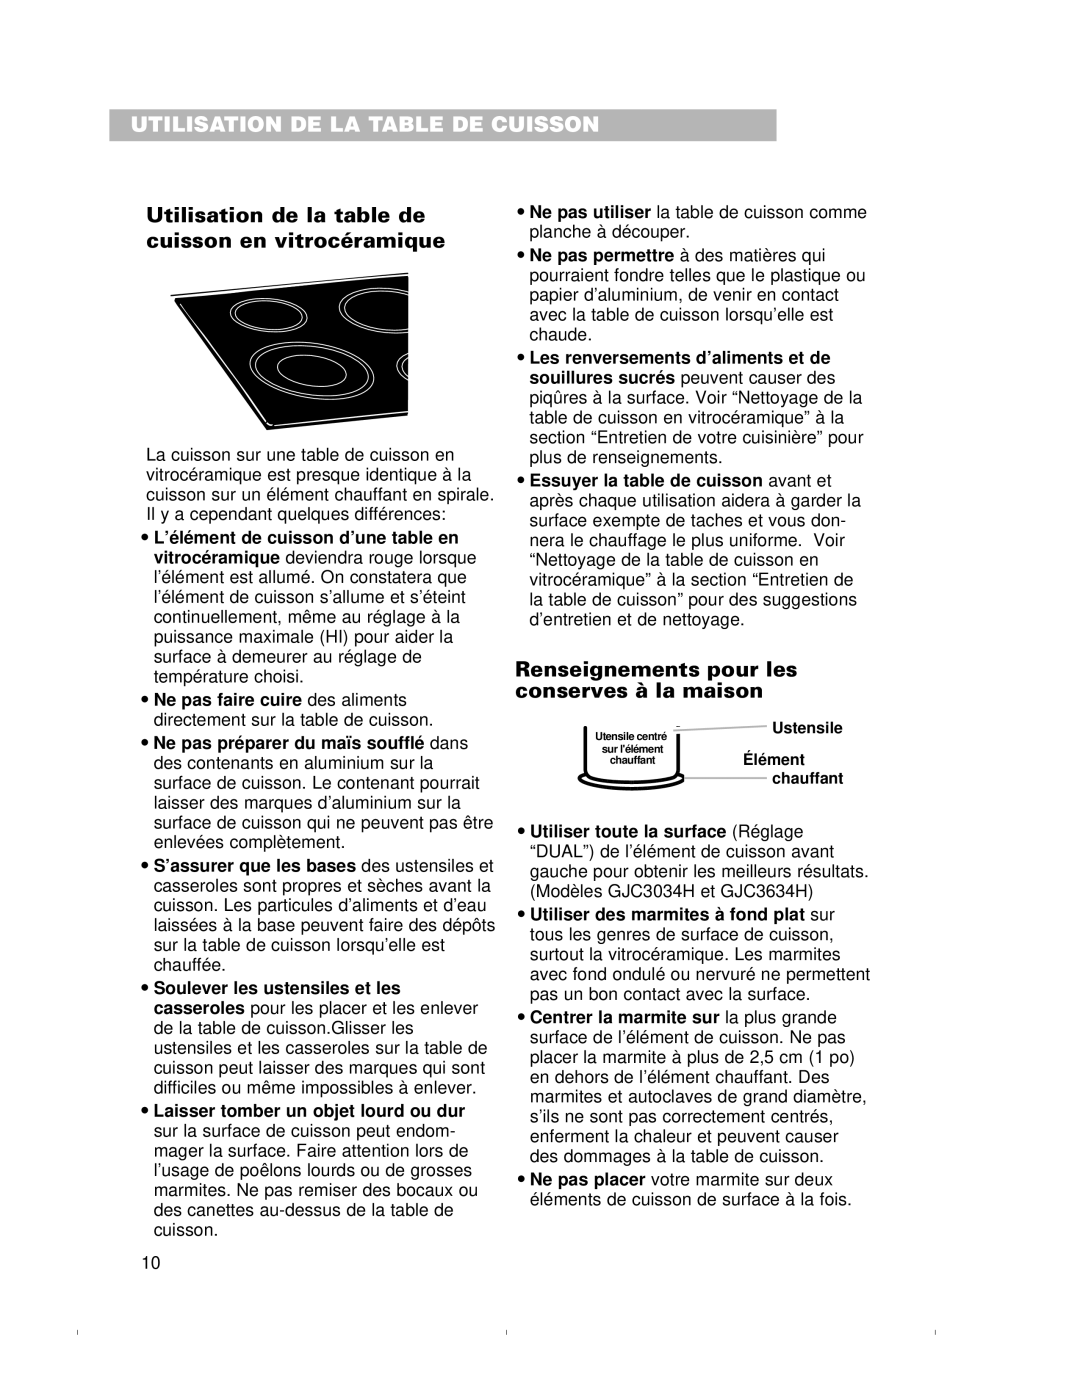 Whirlpool GJC3034H Utilisation de la table de cuisson en vitrocéramique, Renseignements pour les conserves à la maison 